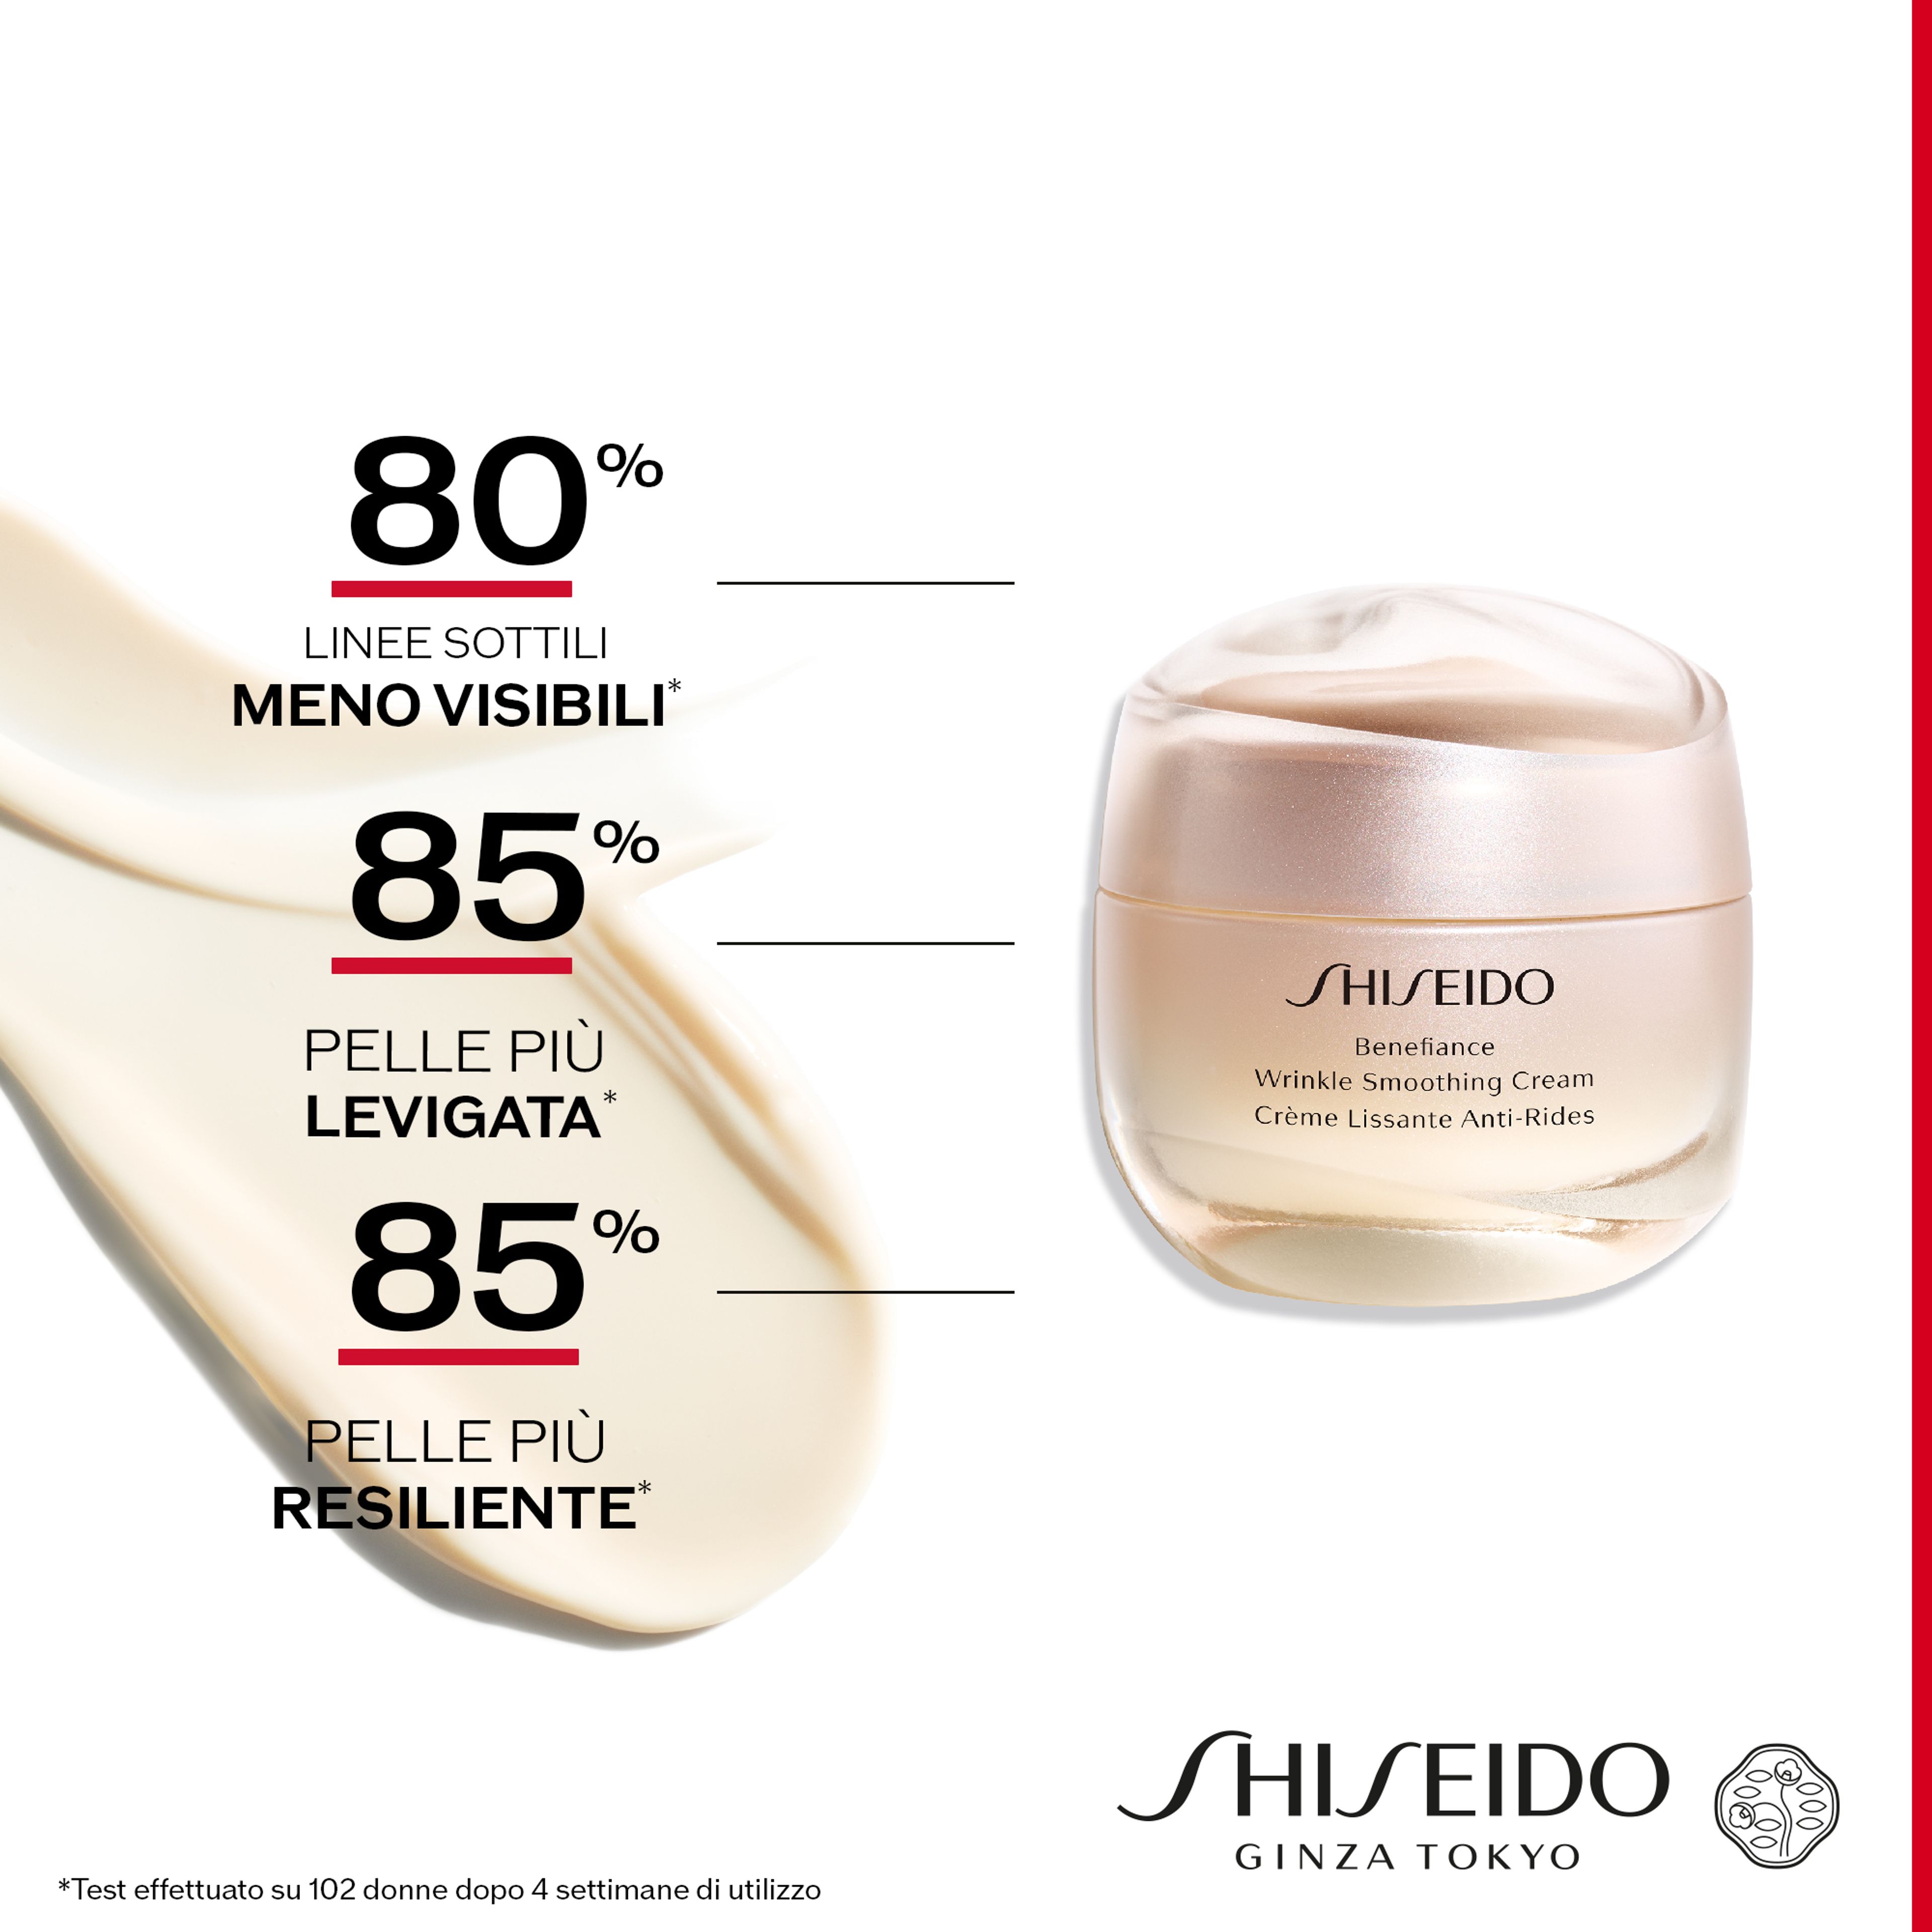 Shiseido Wrinkle Smoothing Cream 3